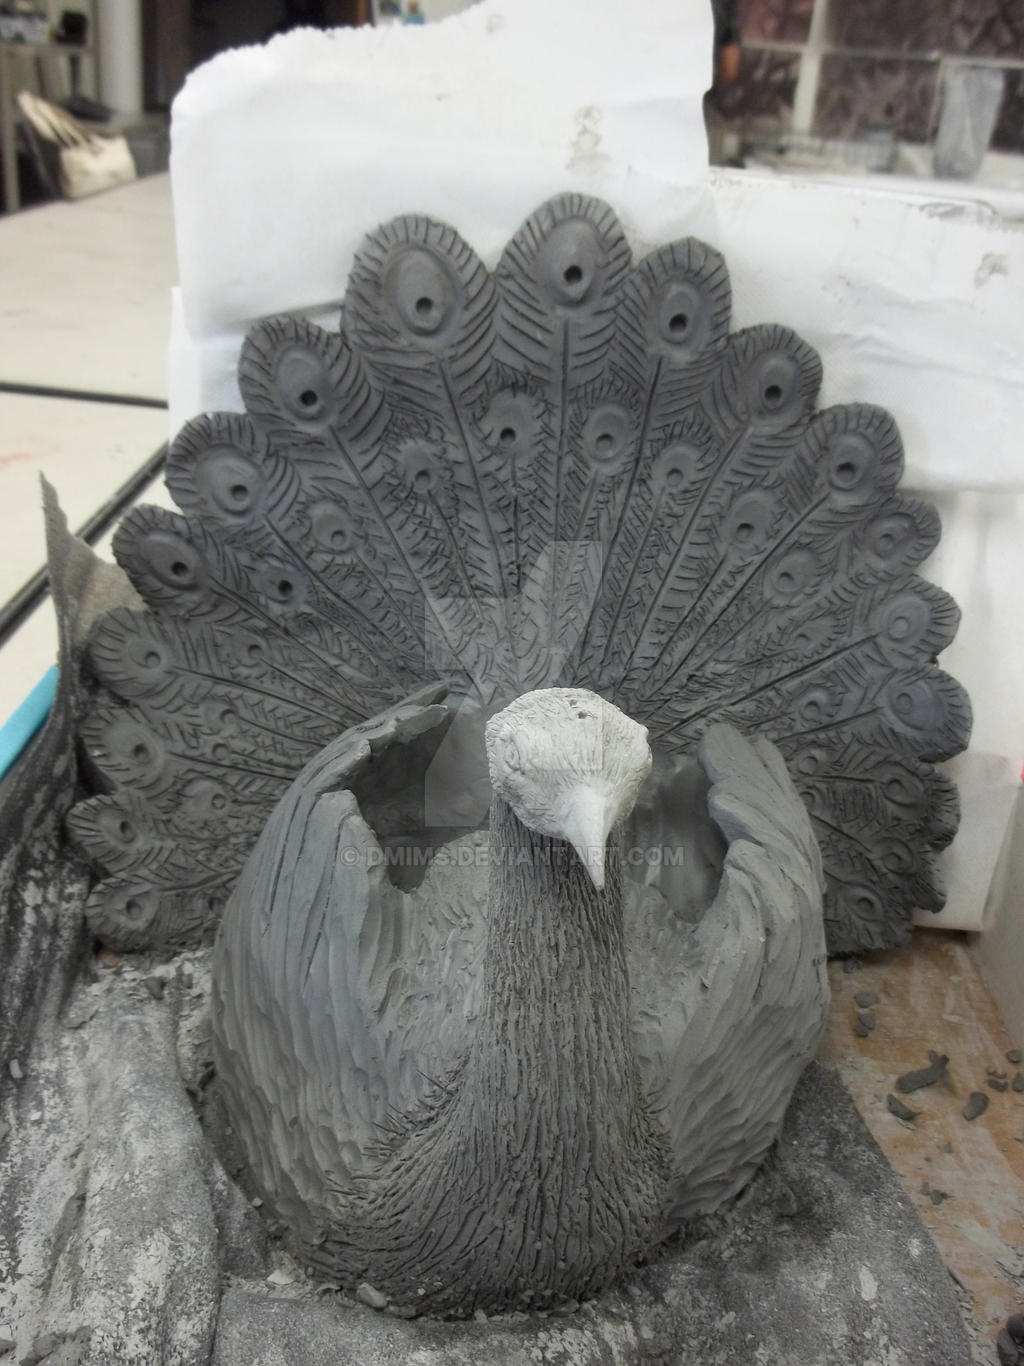 Ceramic peacock